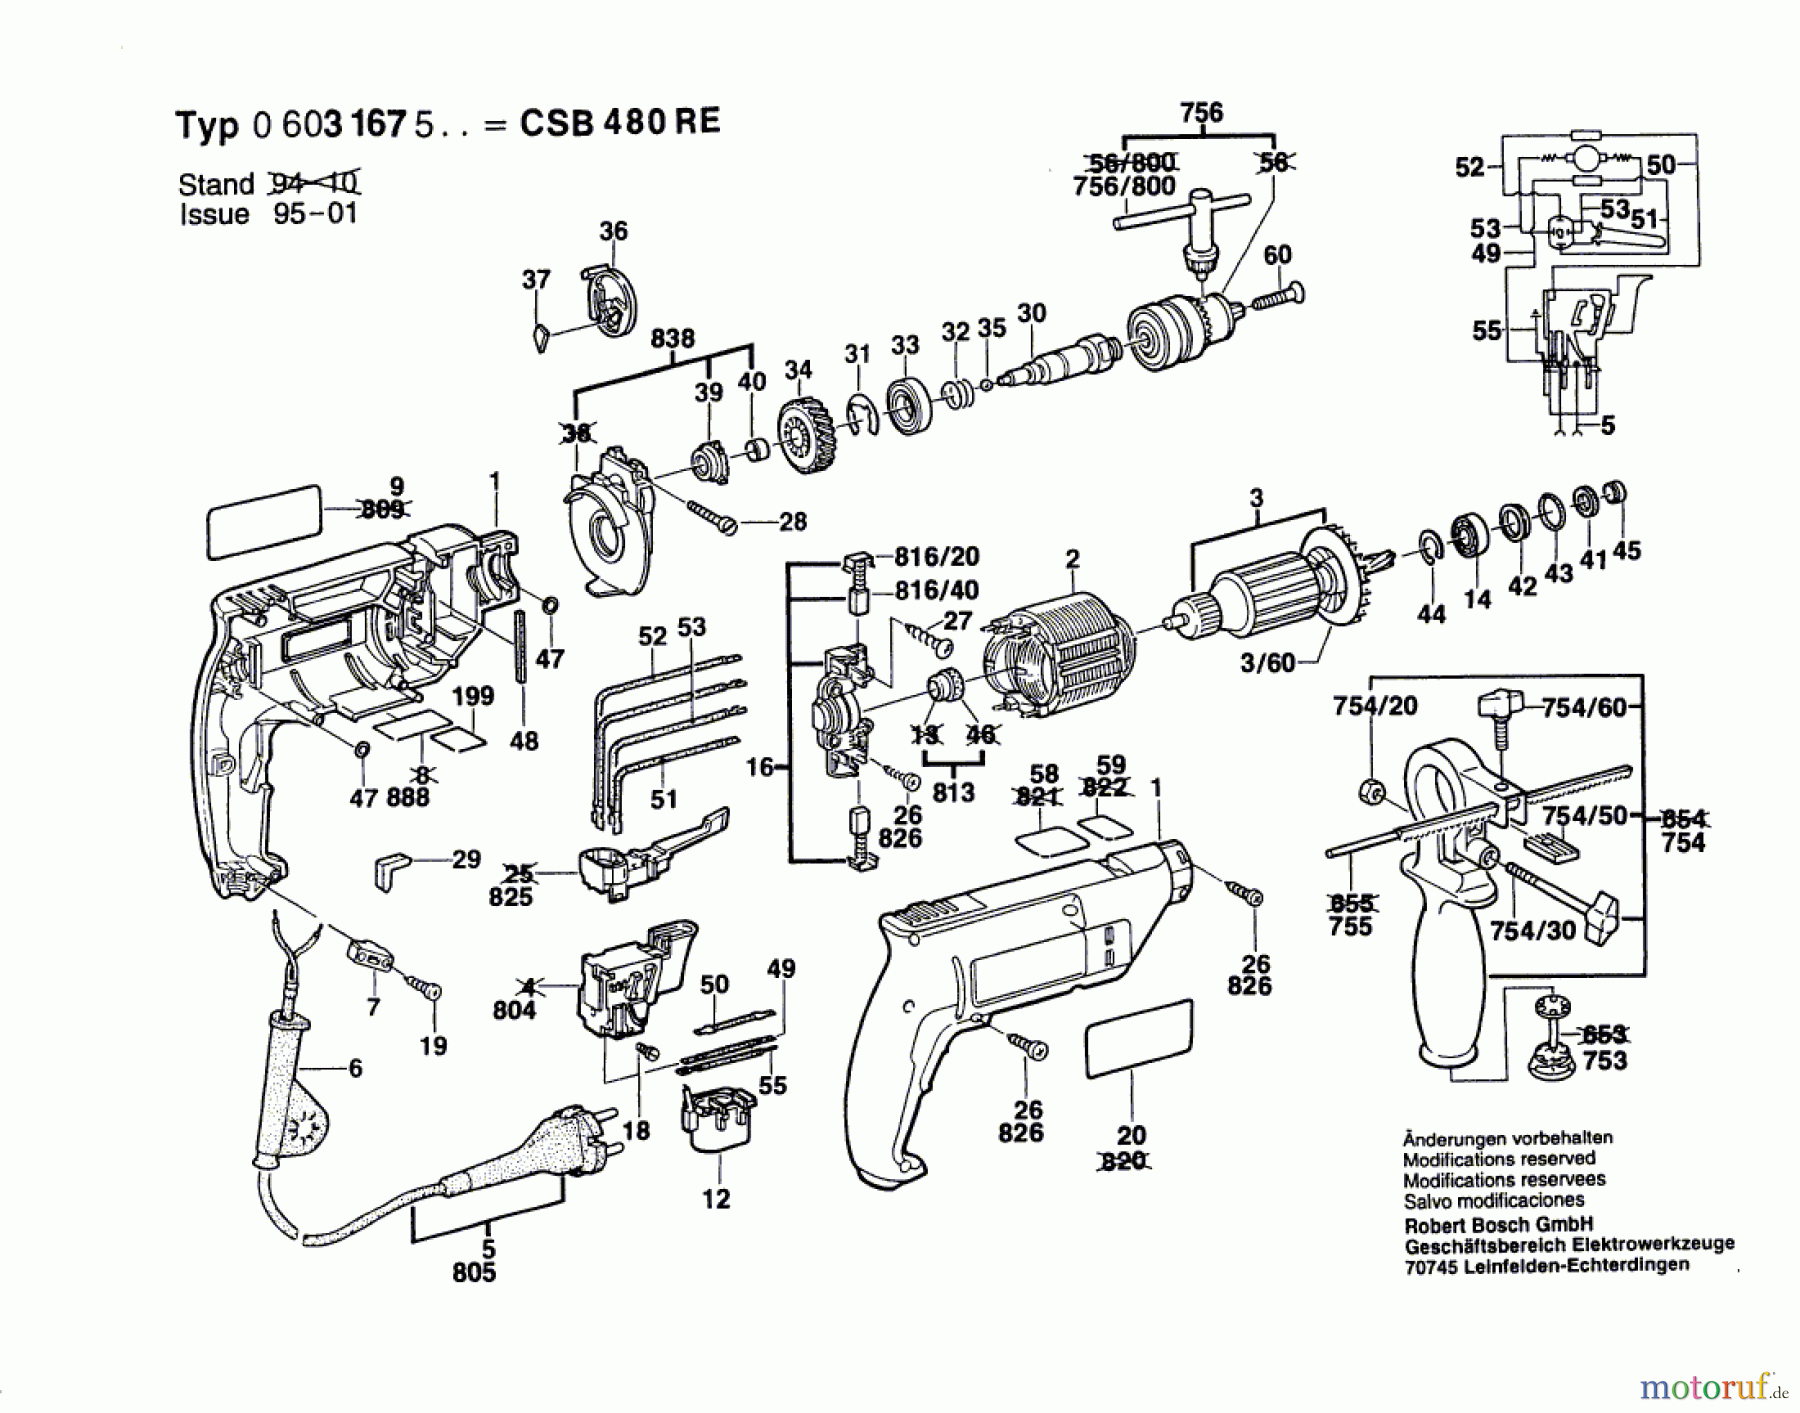  Bosch Werkzeug Hw-1G-Schlagbohrmaschine CSB 480 RE Seite 1